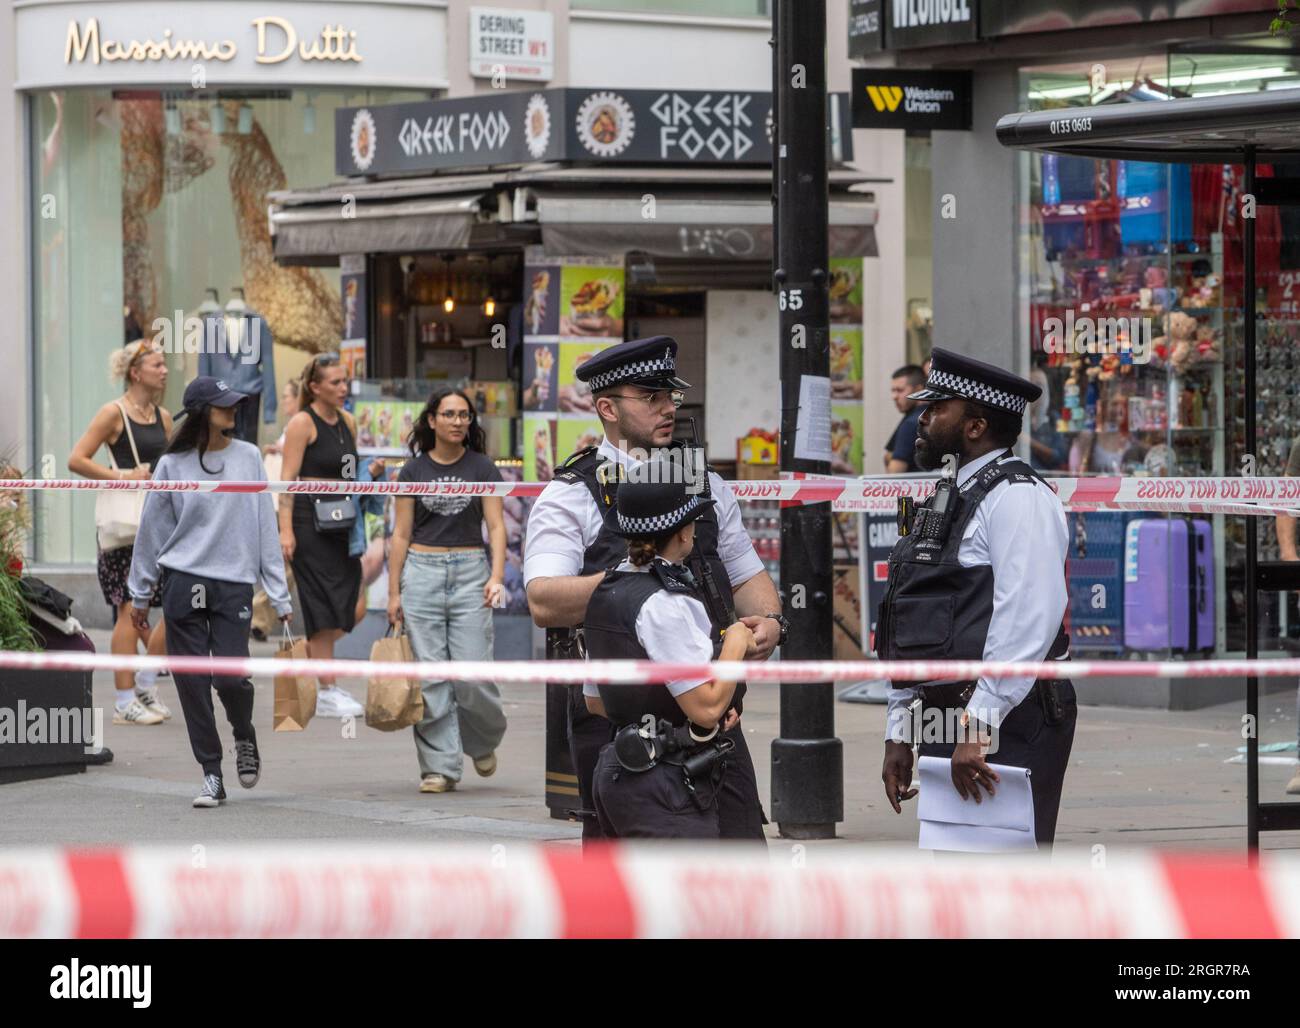 POLIZIA OXFORD STREET © Jeff Moore - agenti di polizia sulla scena di un incidente che ha coinvolto un autobus a Oxford Street questo pomeriggio dopo Marks & Spencer Foto Stock